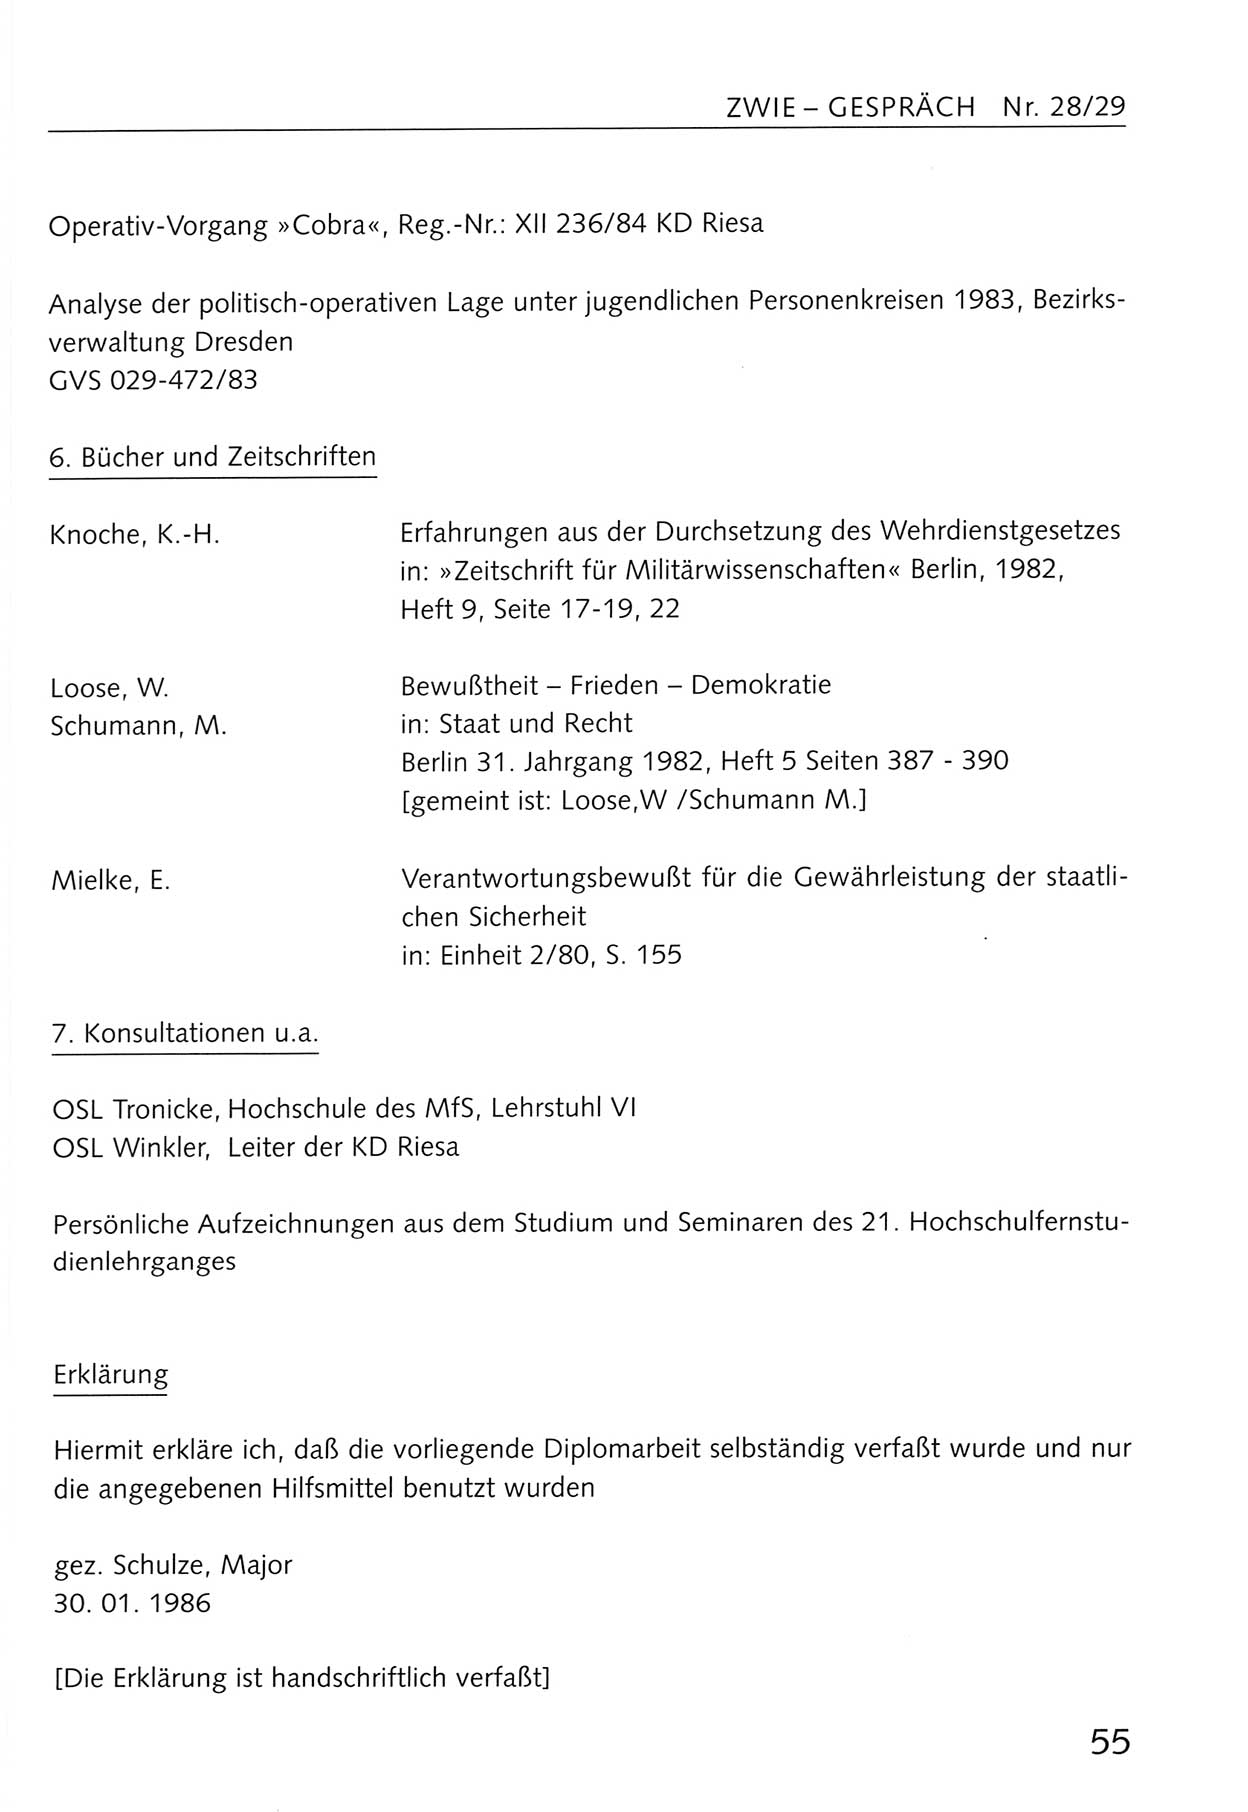 Zwie-Gespräch, Beiträge zum Umgang mit der Staatssicherheits-Vergangenheit [Deutsche Demokratische Republik (DDR)], Ausgabe Nr. 28/29, Berlin 1995, Seite 55 (Zwie-Gespr. Ausg. 28/29 1995, S. 55)